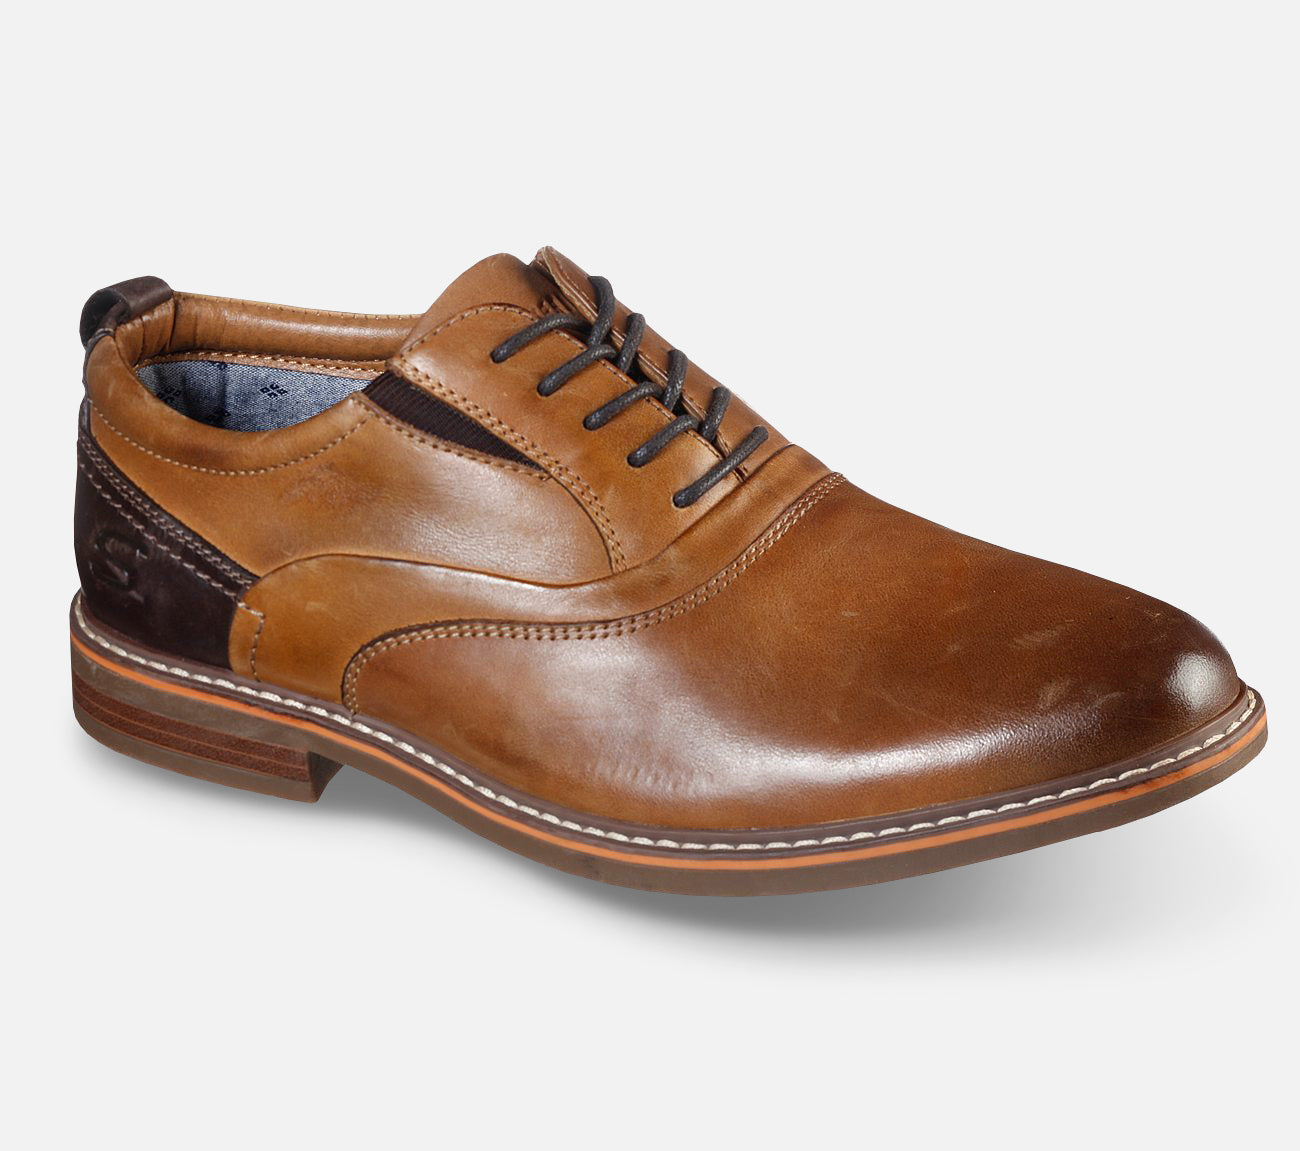 Bregman - Velsom Shoe Skechers